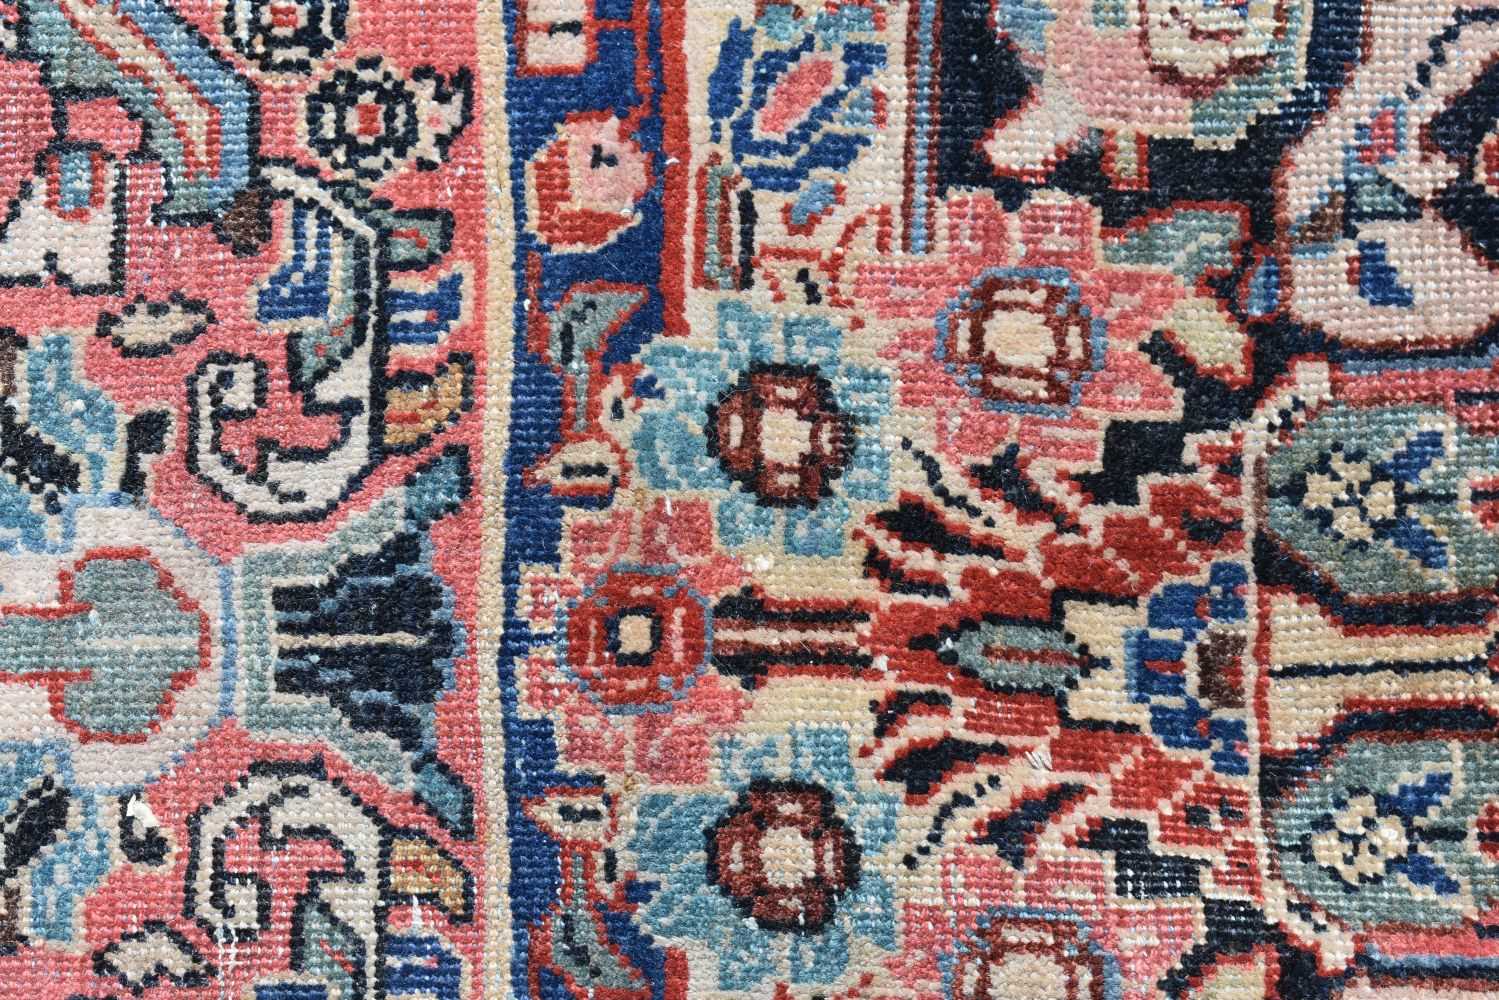 A Persian Sarouk rug 367 x 267 cm - Image 5 of 18